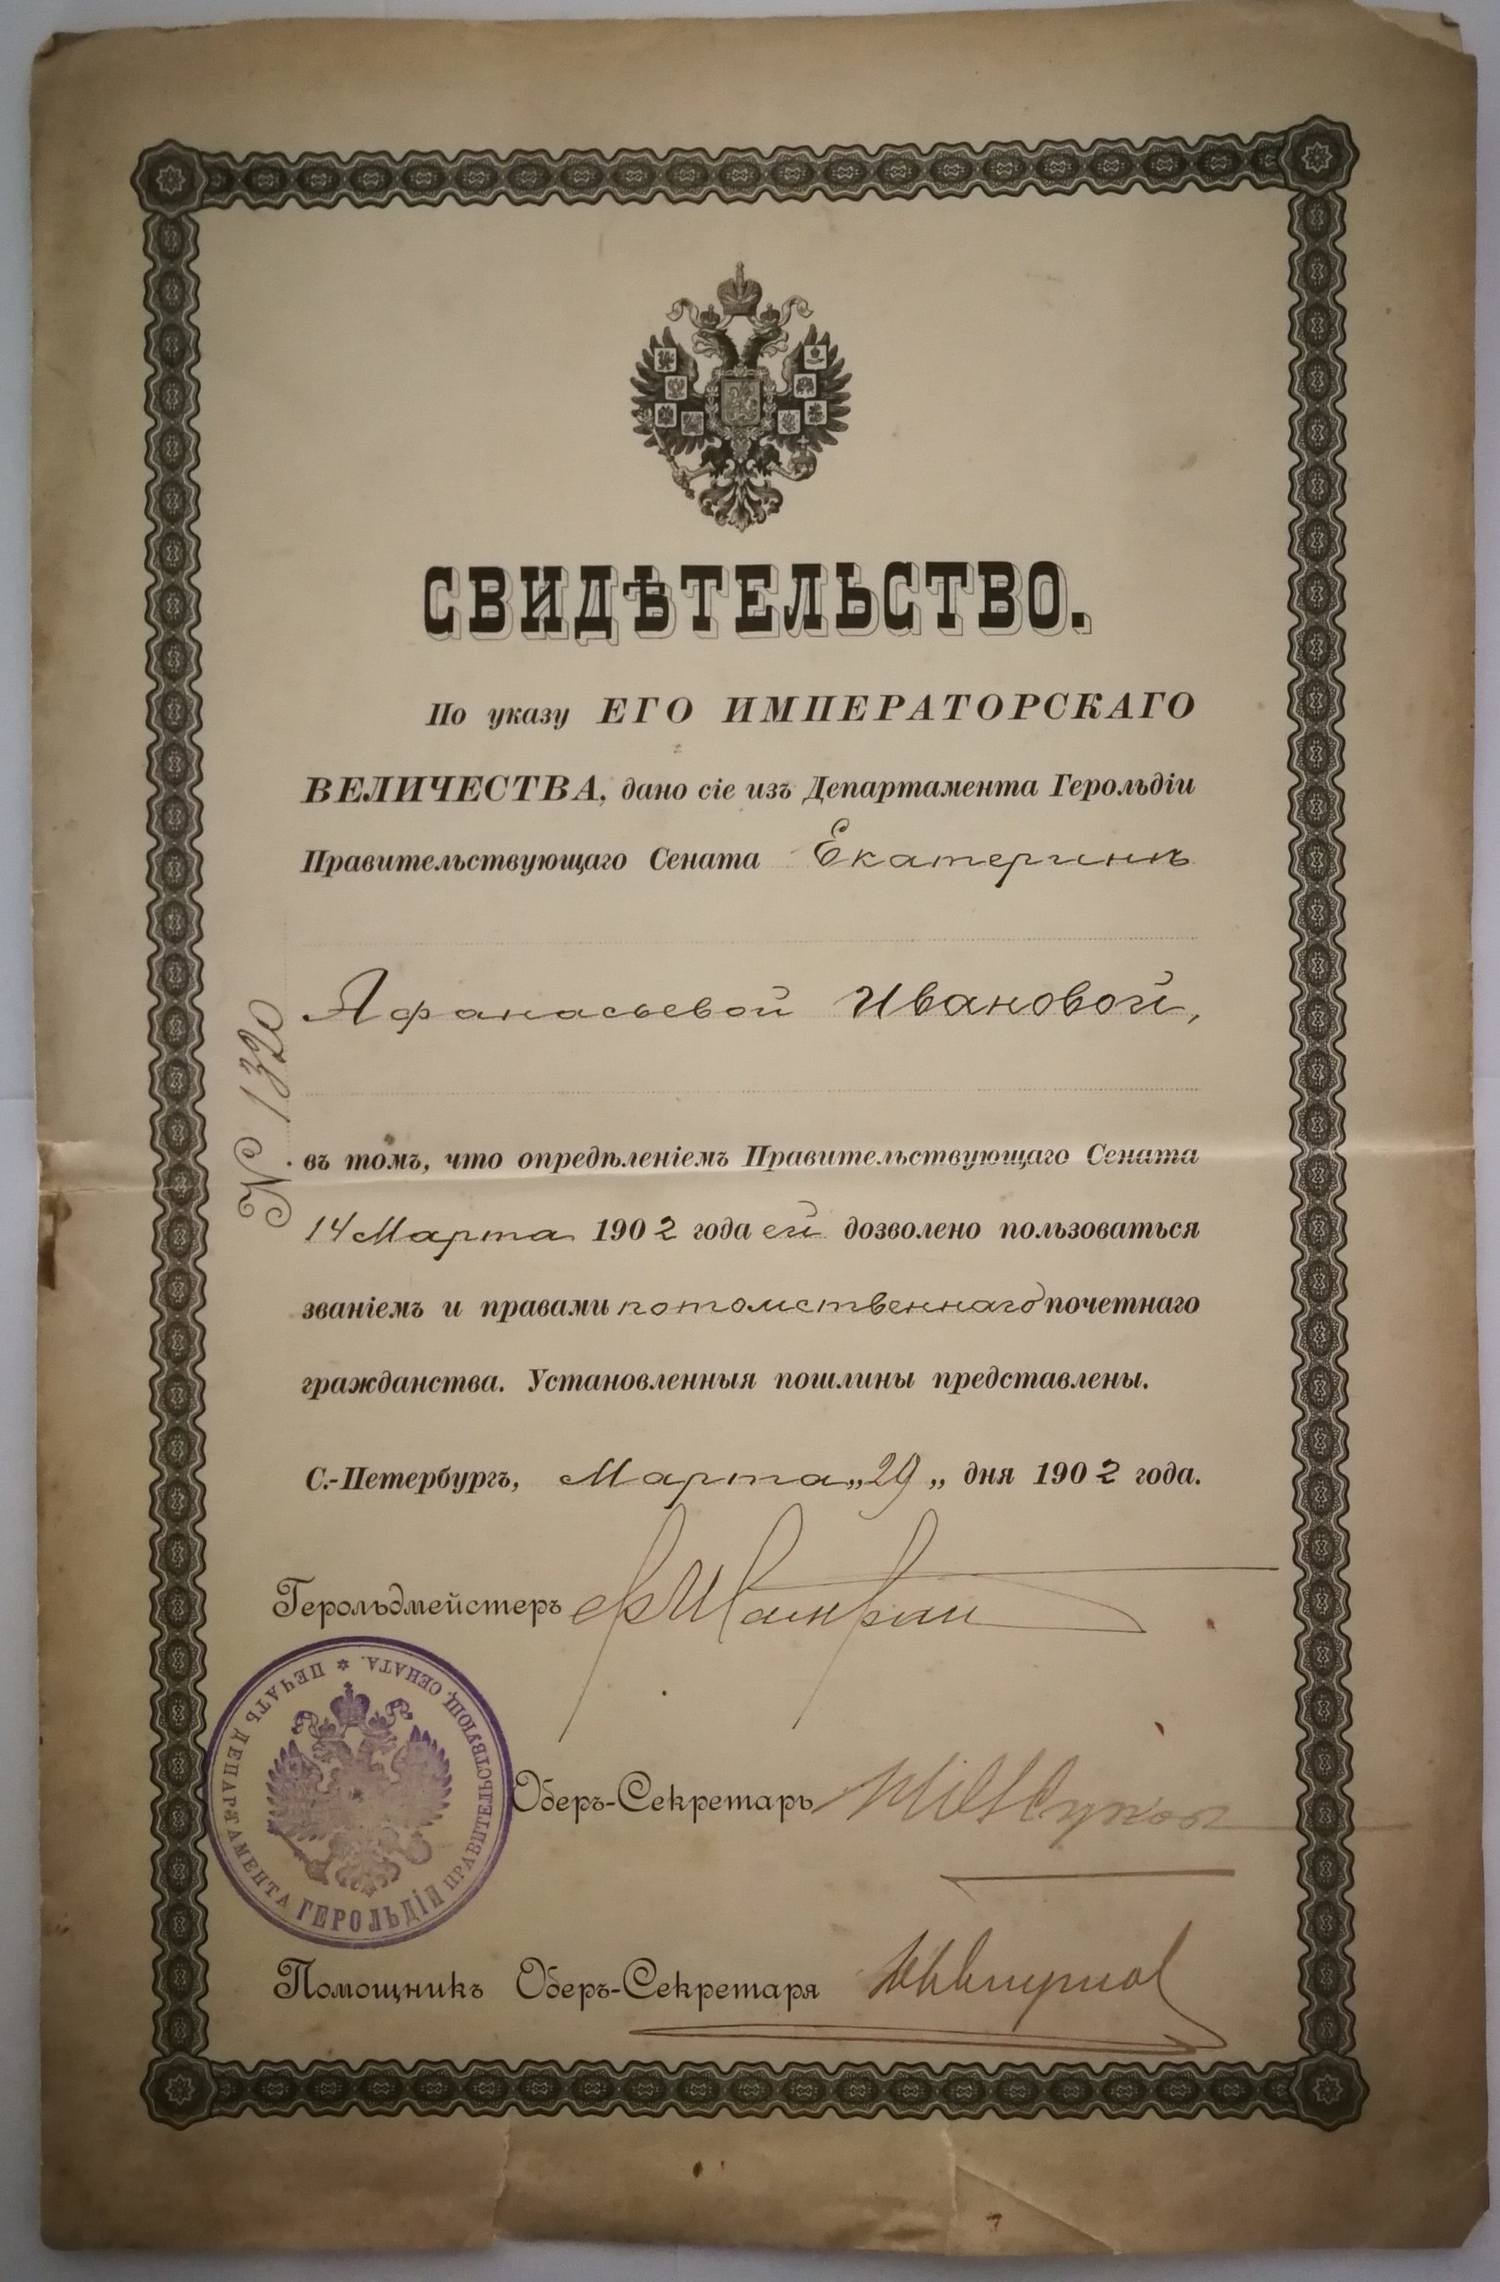 Свидетельство из Департамента Герольдии Правительствующего Сената о дозволении пользоваться правами потомственного почётного гражданства Екатерине Афанасьевне Ивановой. Дано 29 марта 1902 года.